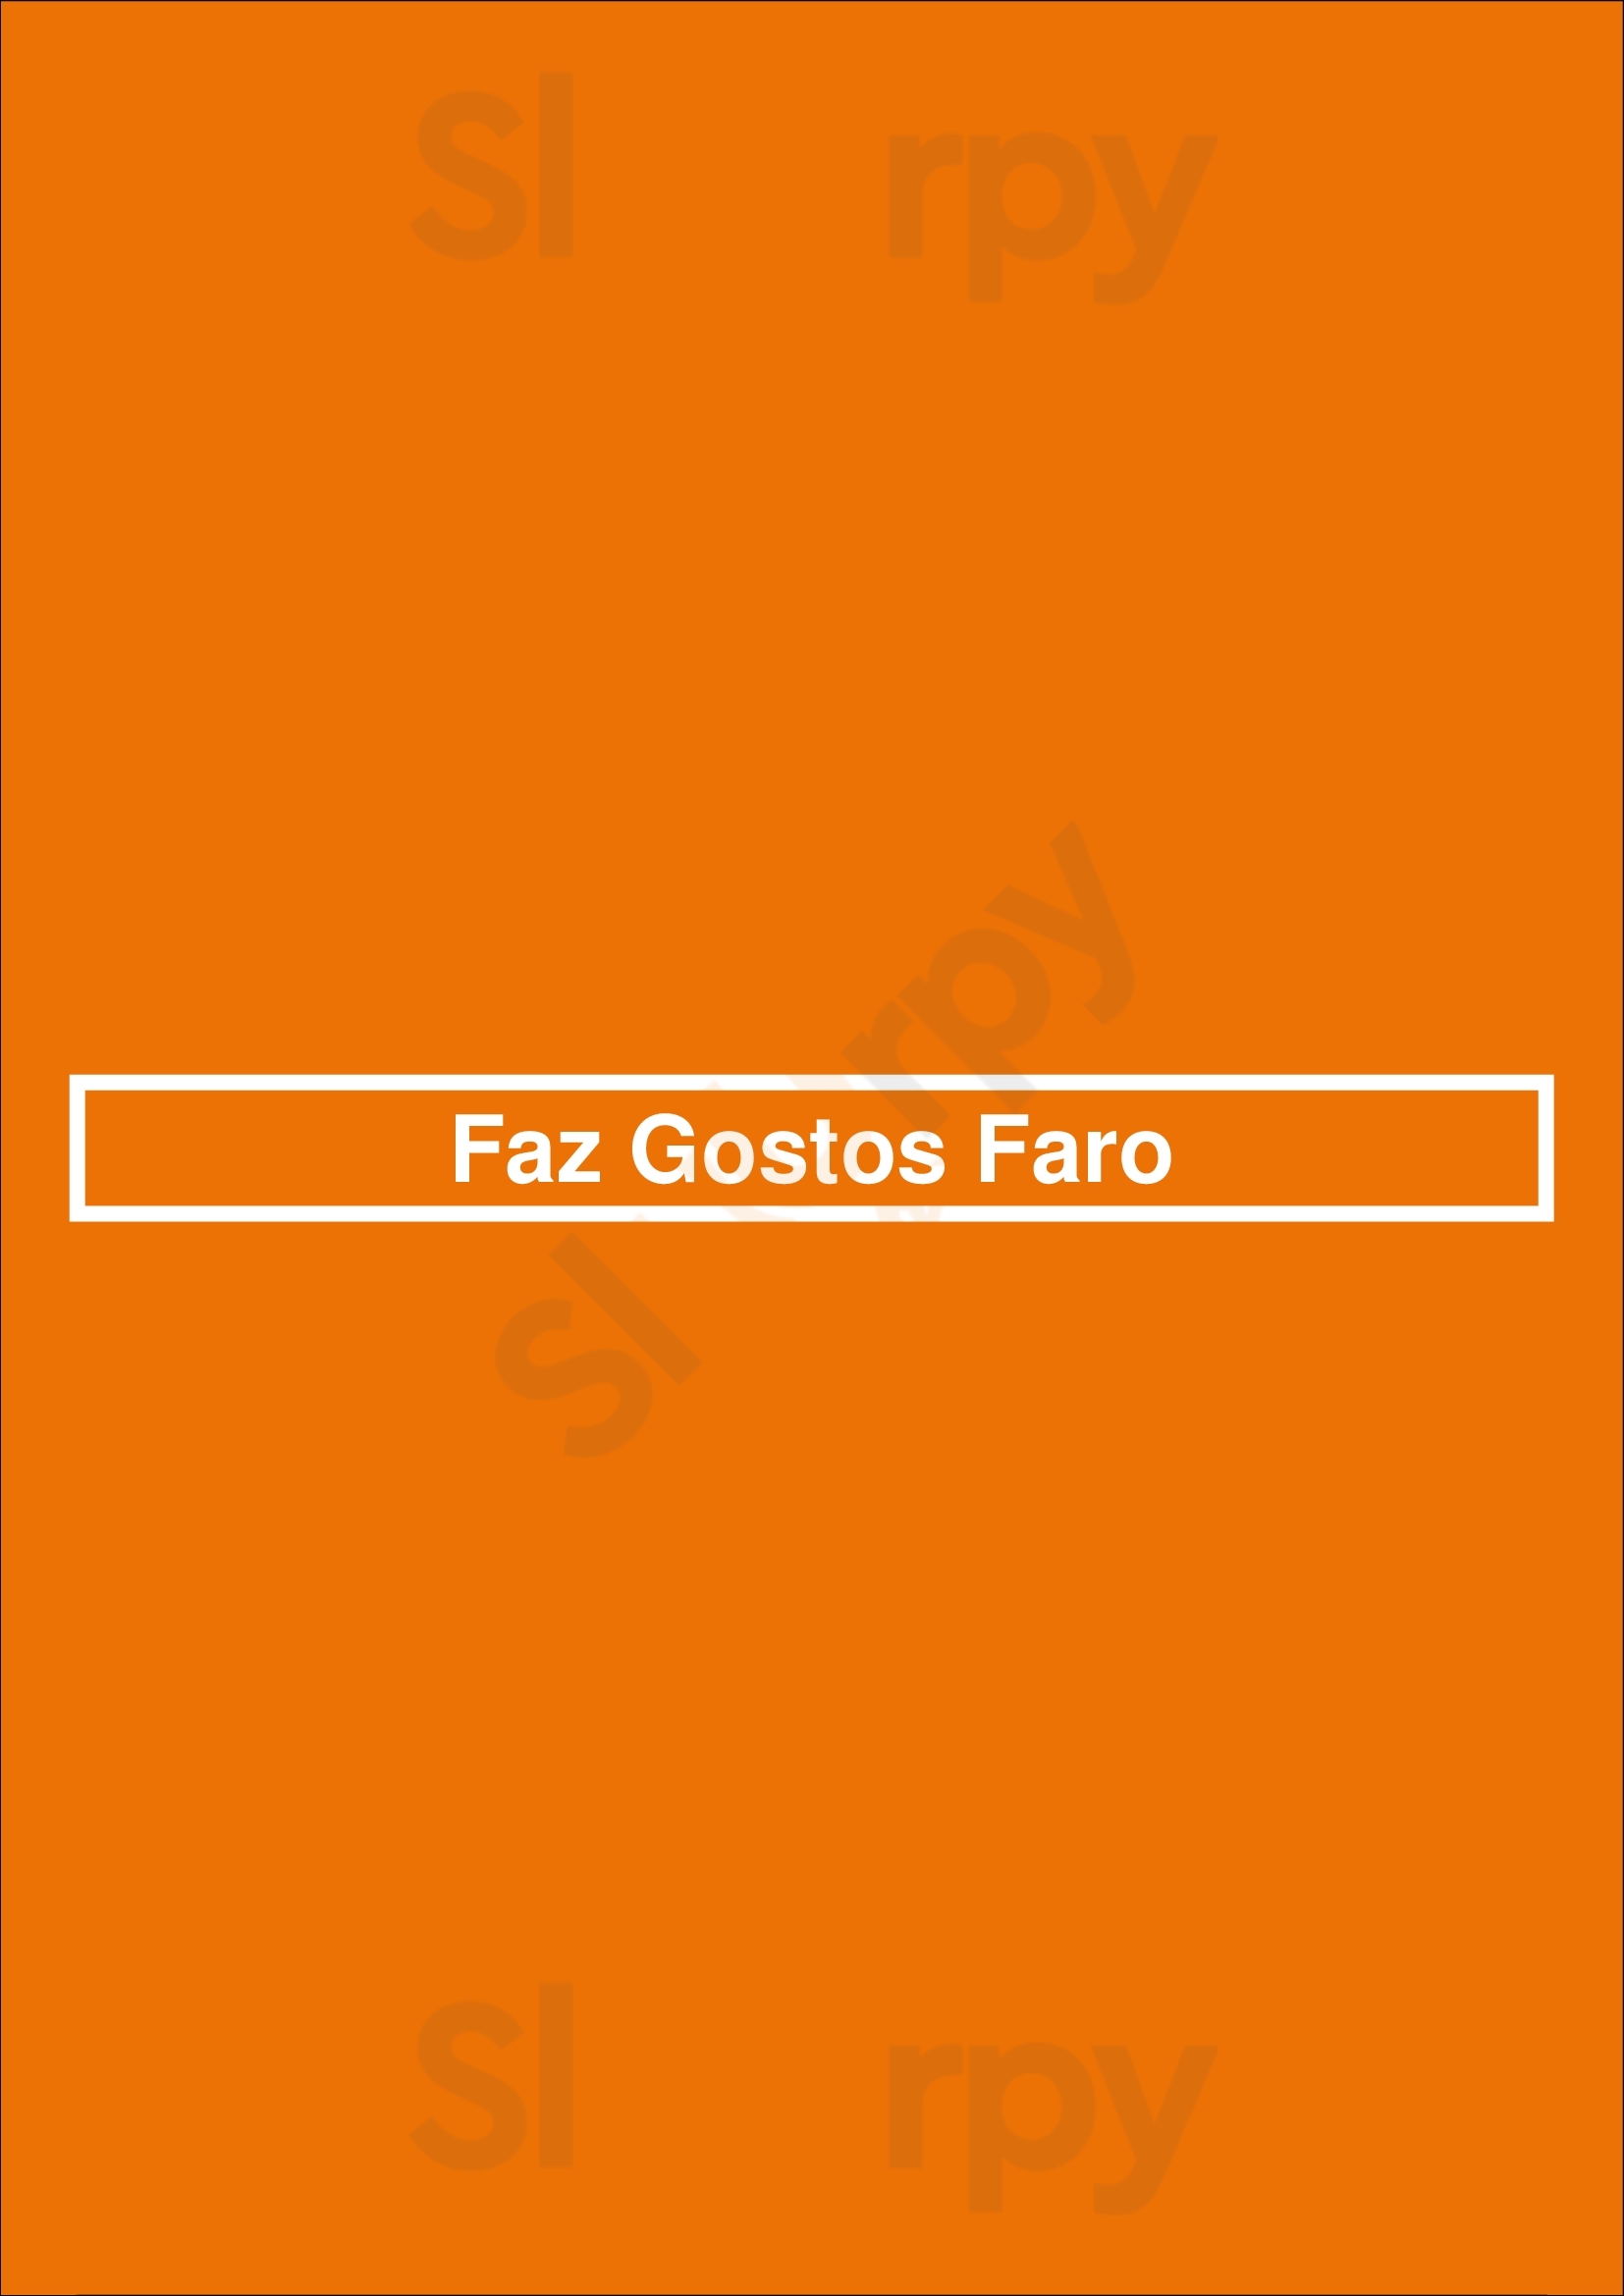 Faz Gostos Faro Faro Menu - 1